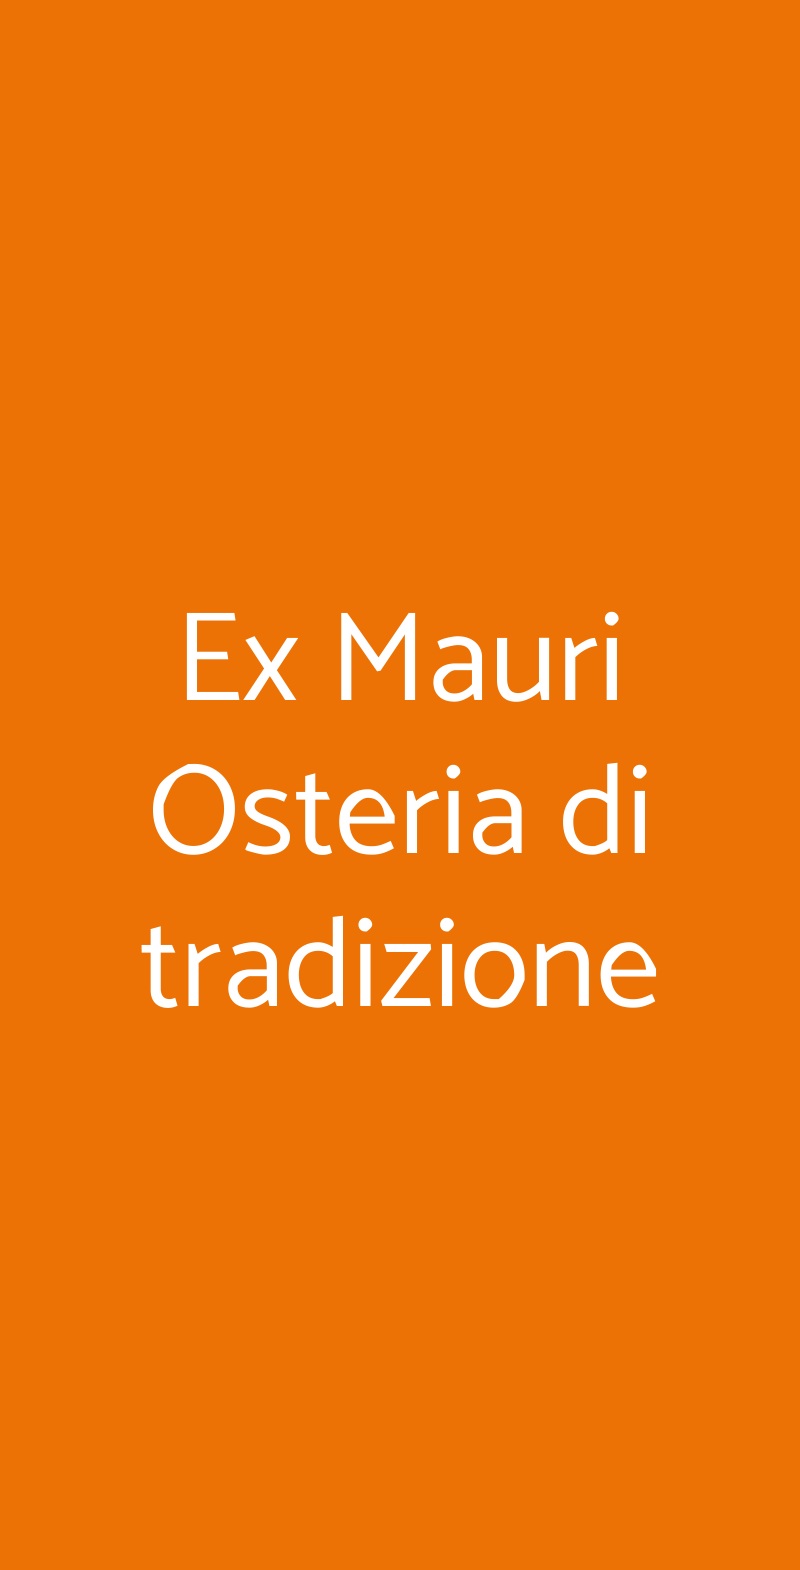 Ex Mauri Osteria di tradizione Milano menù 1 pagina